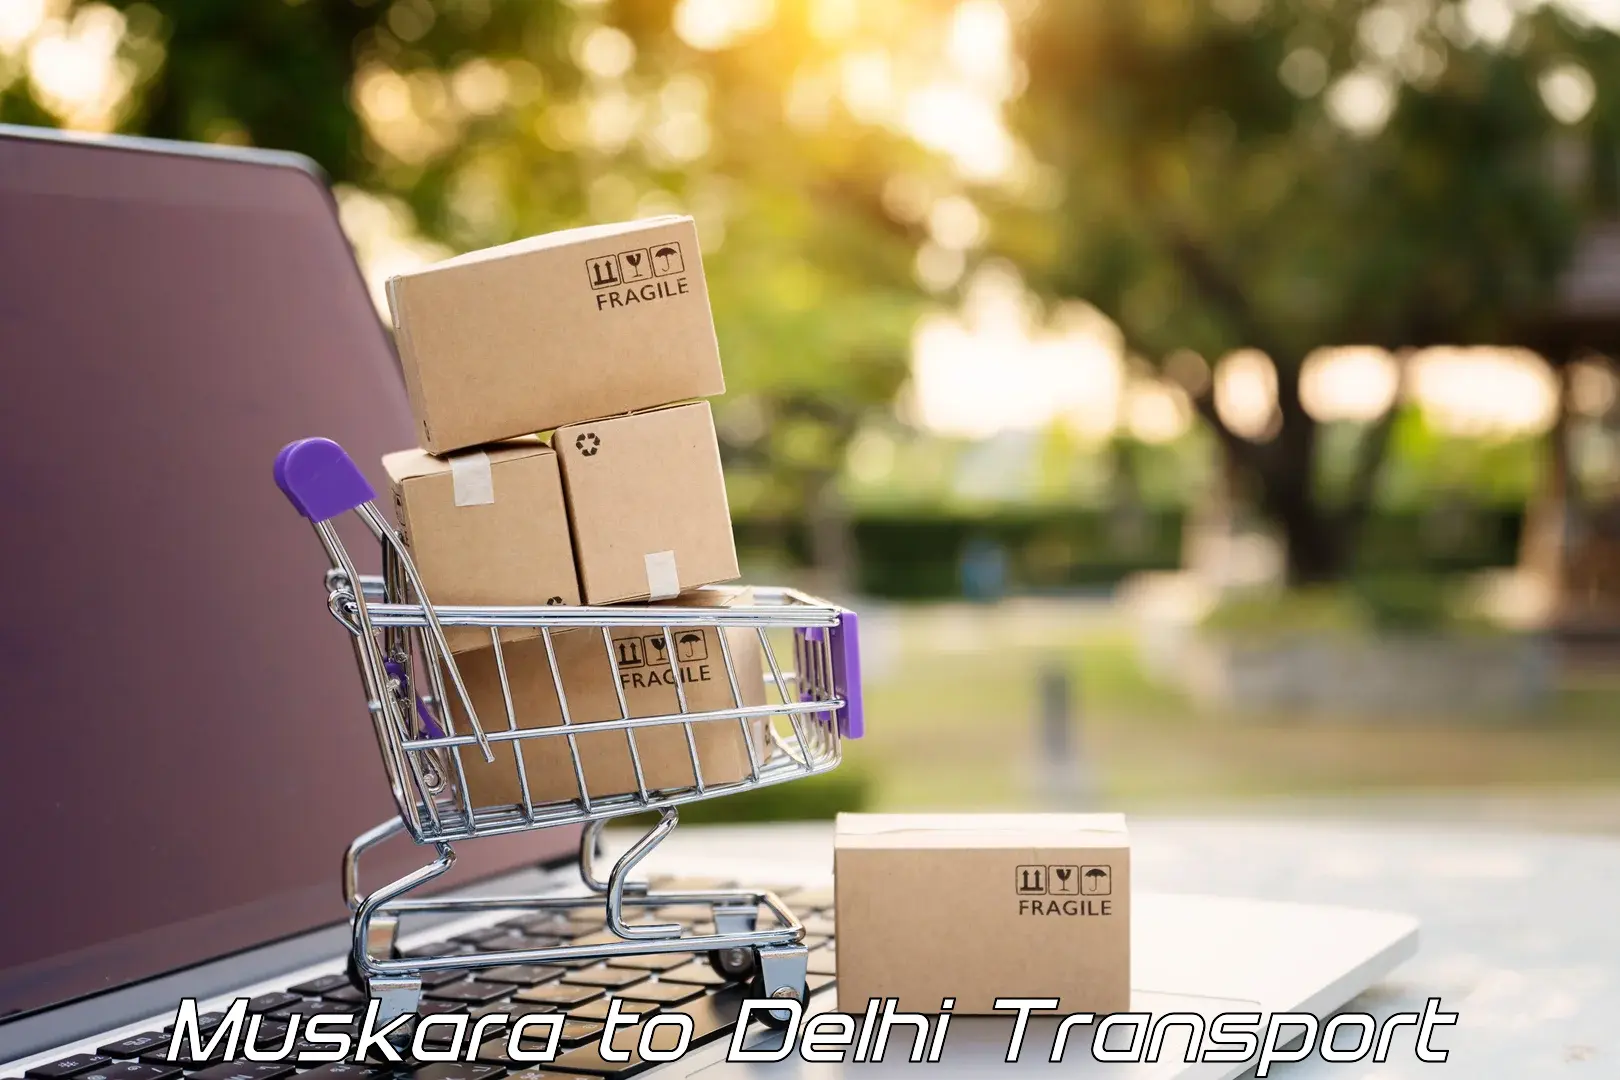 All India transport service Muskara to NIT Delhi